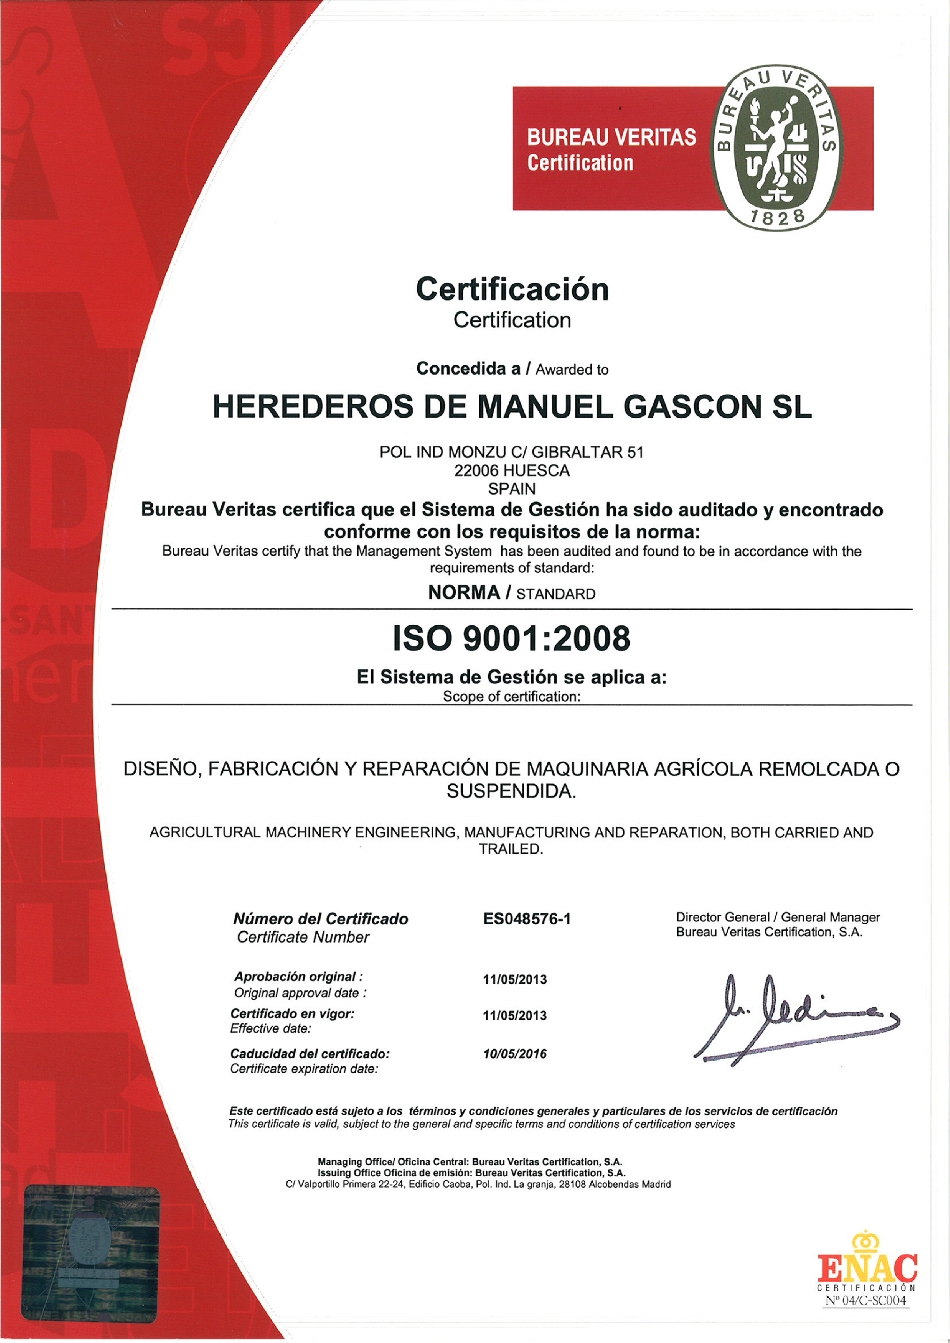 Gascón International Obtiene El Certificado De Calidad Iso 9001 En